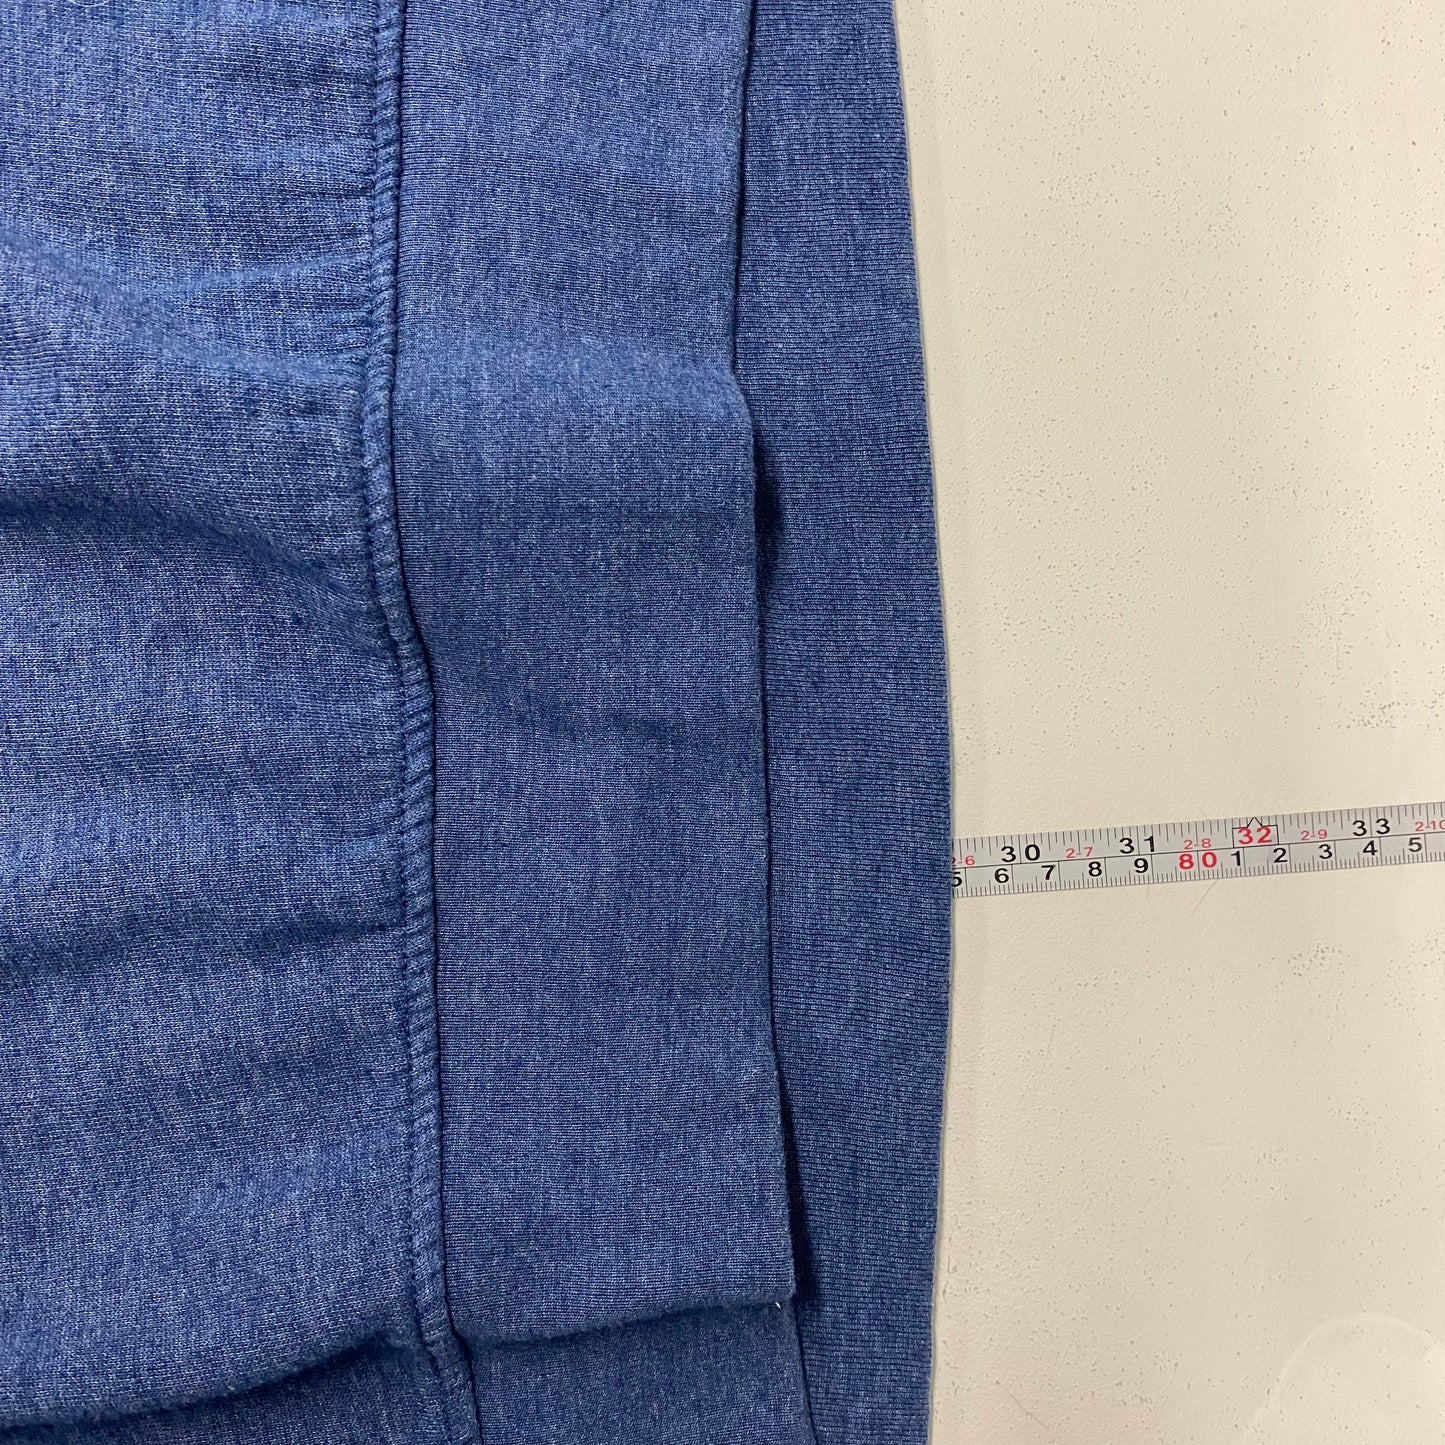 League Brand ‘KANSAS’ Pullover Sweatshirt Size L Blue 1/4 Zip L/s Tri-Blend EUC